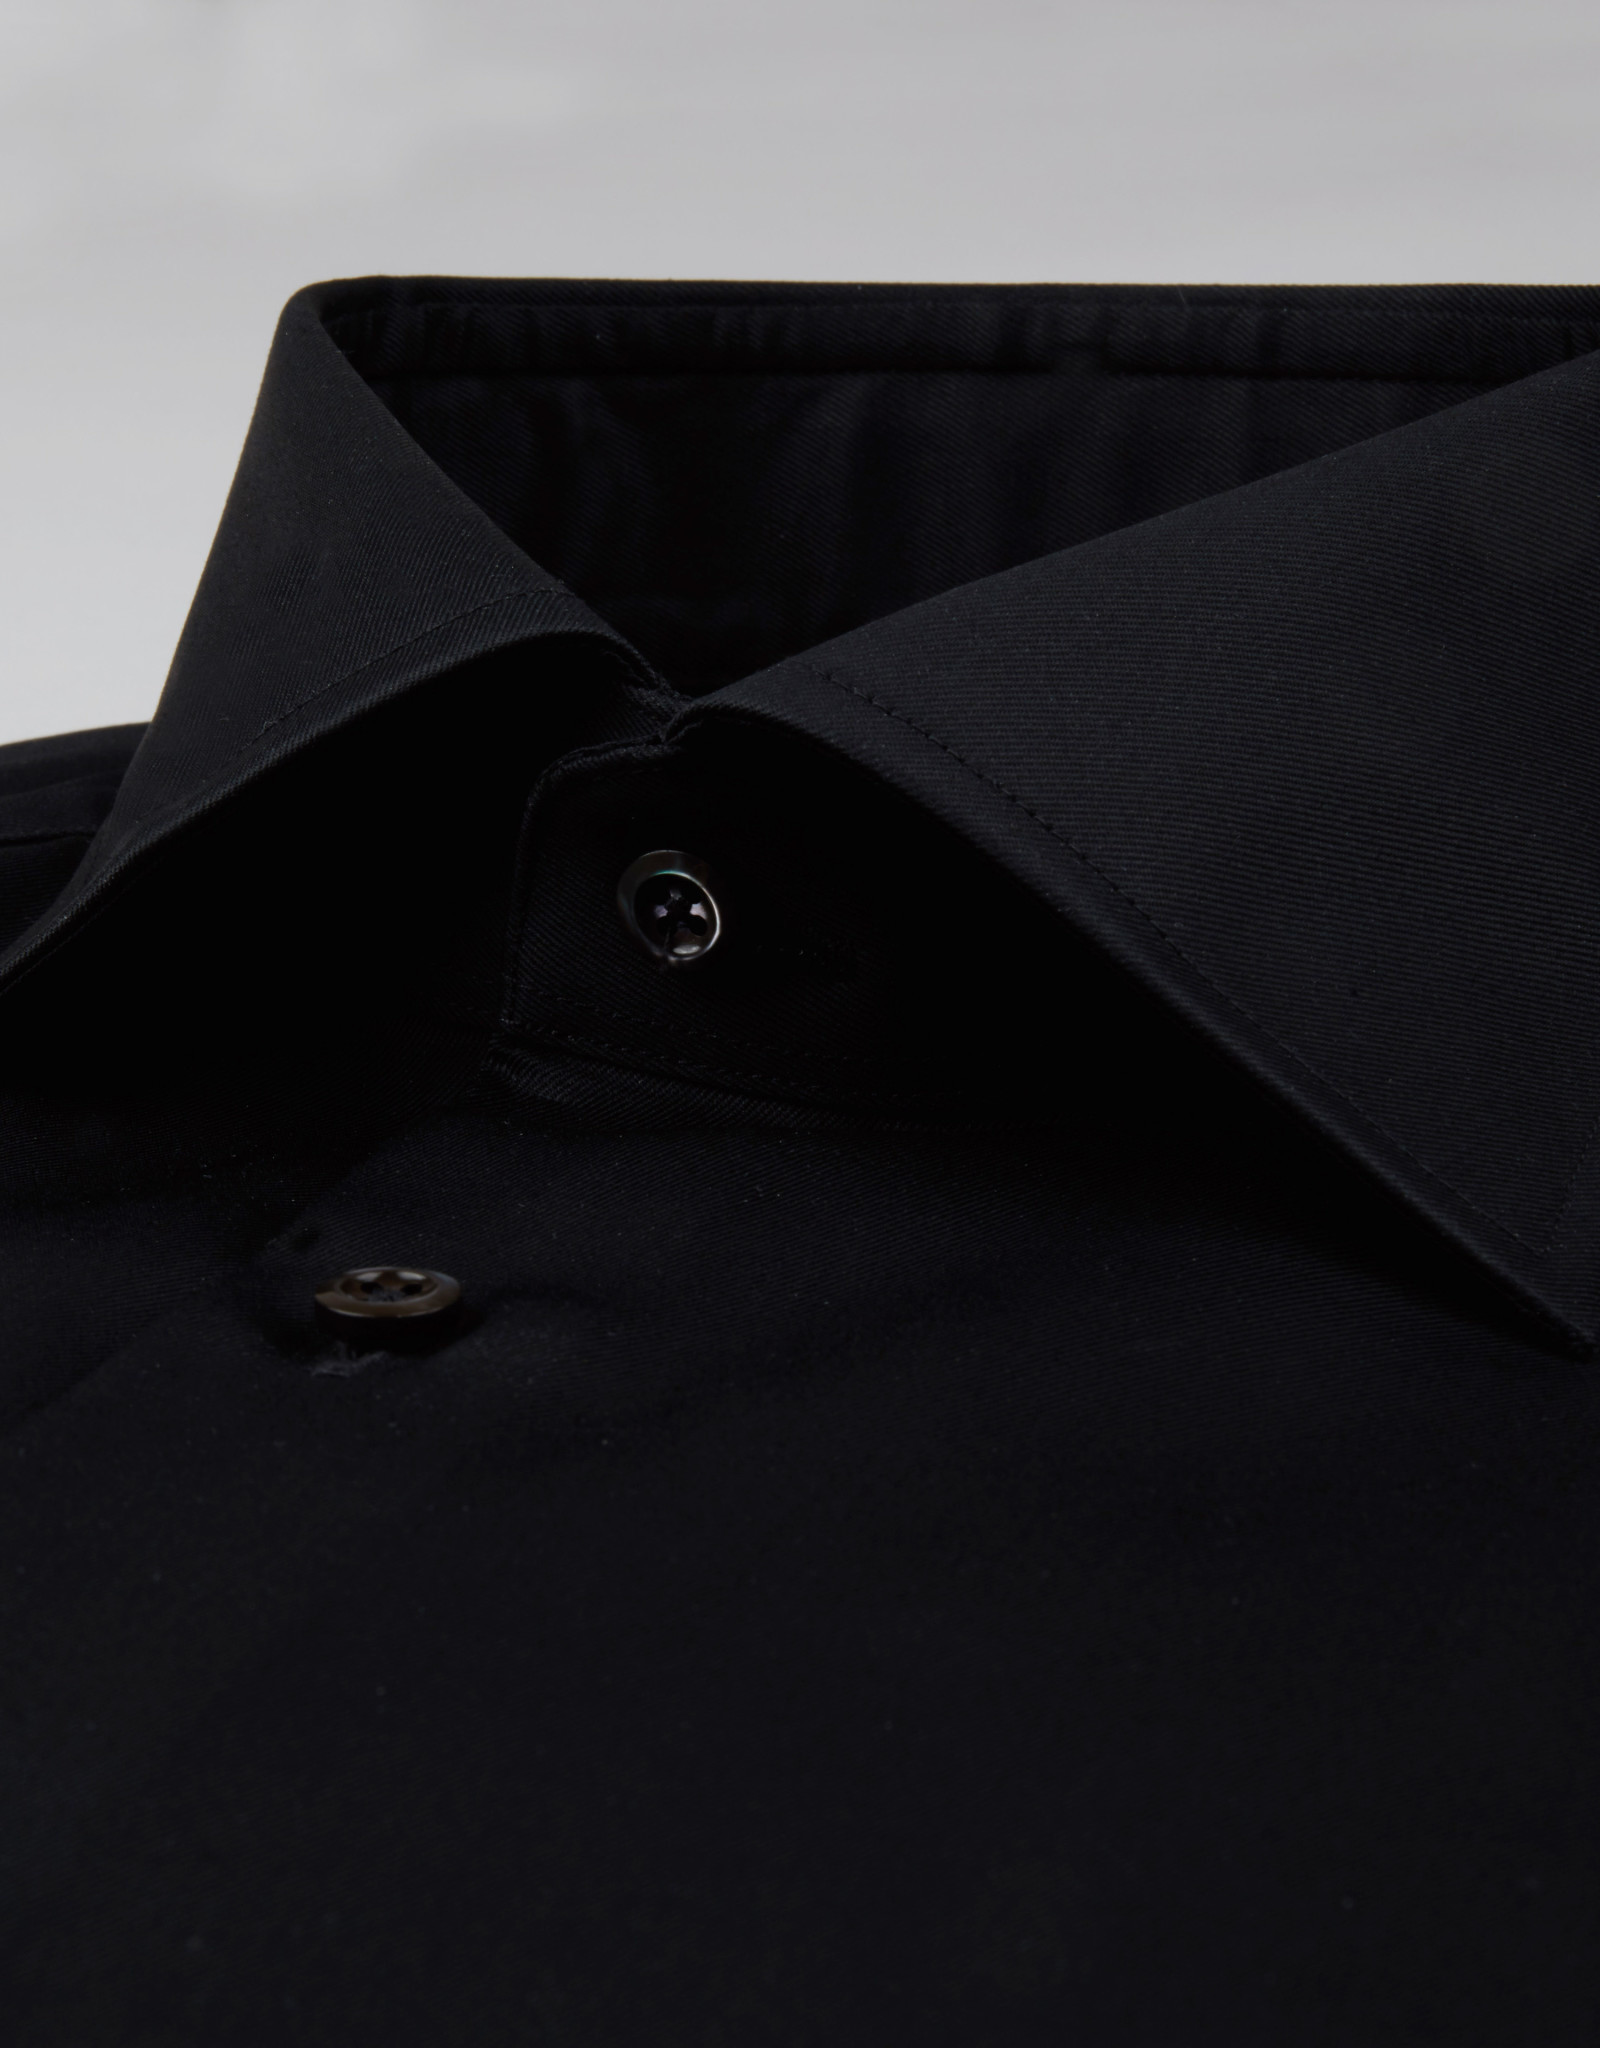 Stenströms Stenströms shirt black Fitted body 602771-1465/600